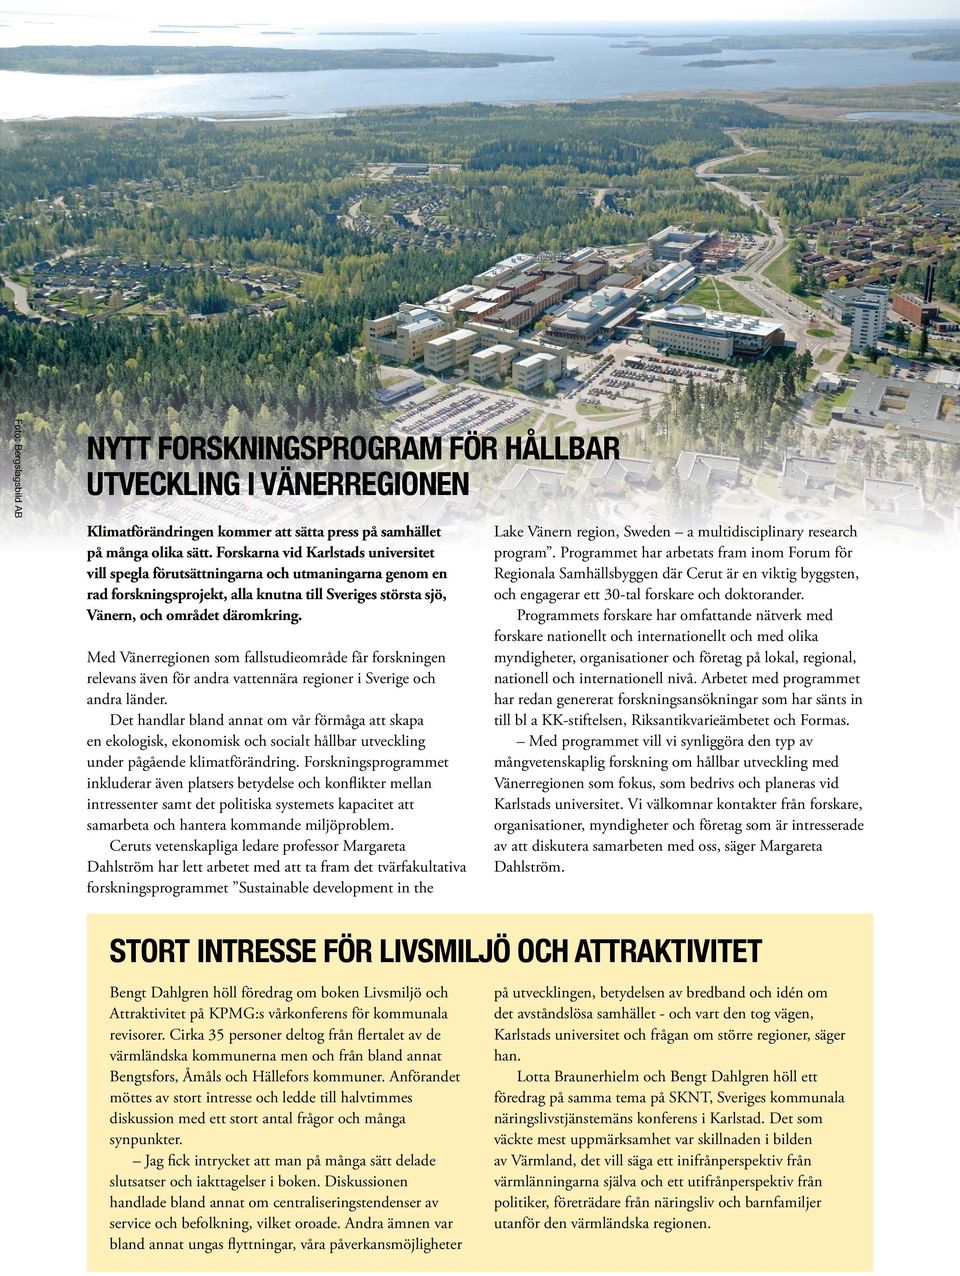 Med Vänerregionen som fallstudieområde får forskningen relevans även för andra vattennära regioner i Sverige och andra länder.